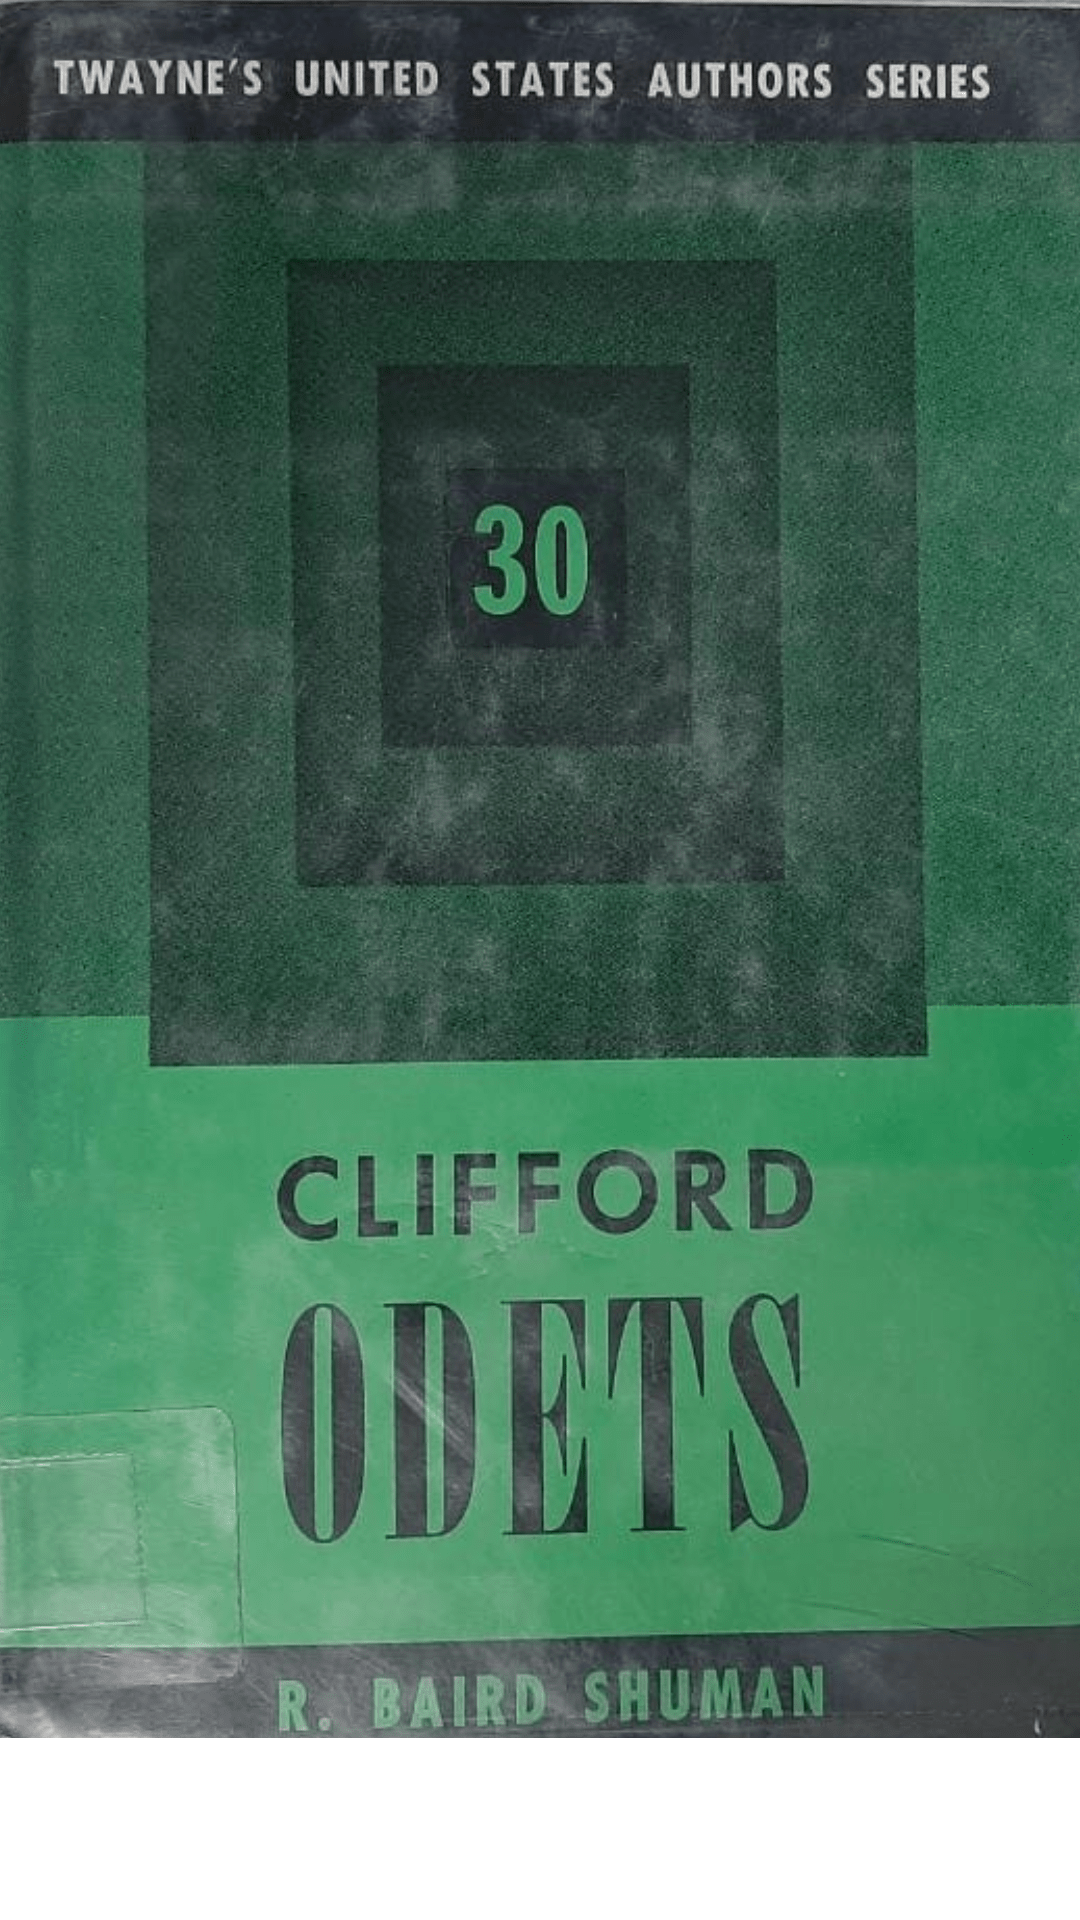 Clifford Odets: Volume 30